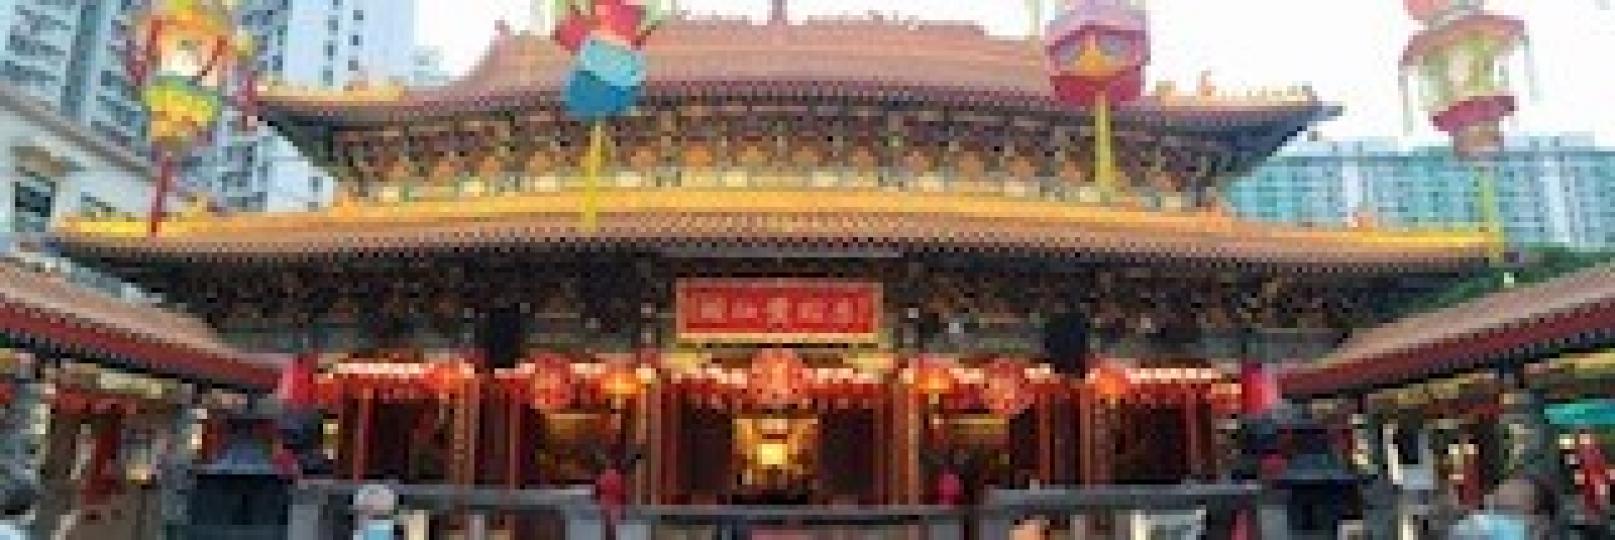 黃大仙廟
黃大仙廟是香港人熟悉的廟宇，剛剛擧行一百週年盛會，遊人特別多。...